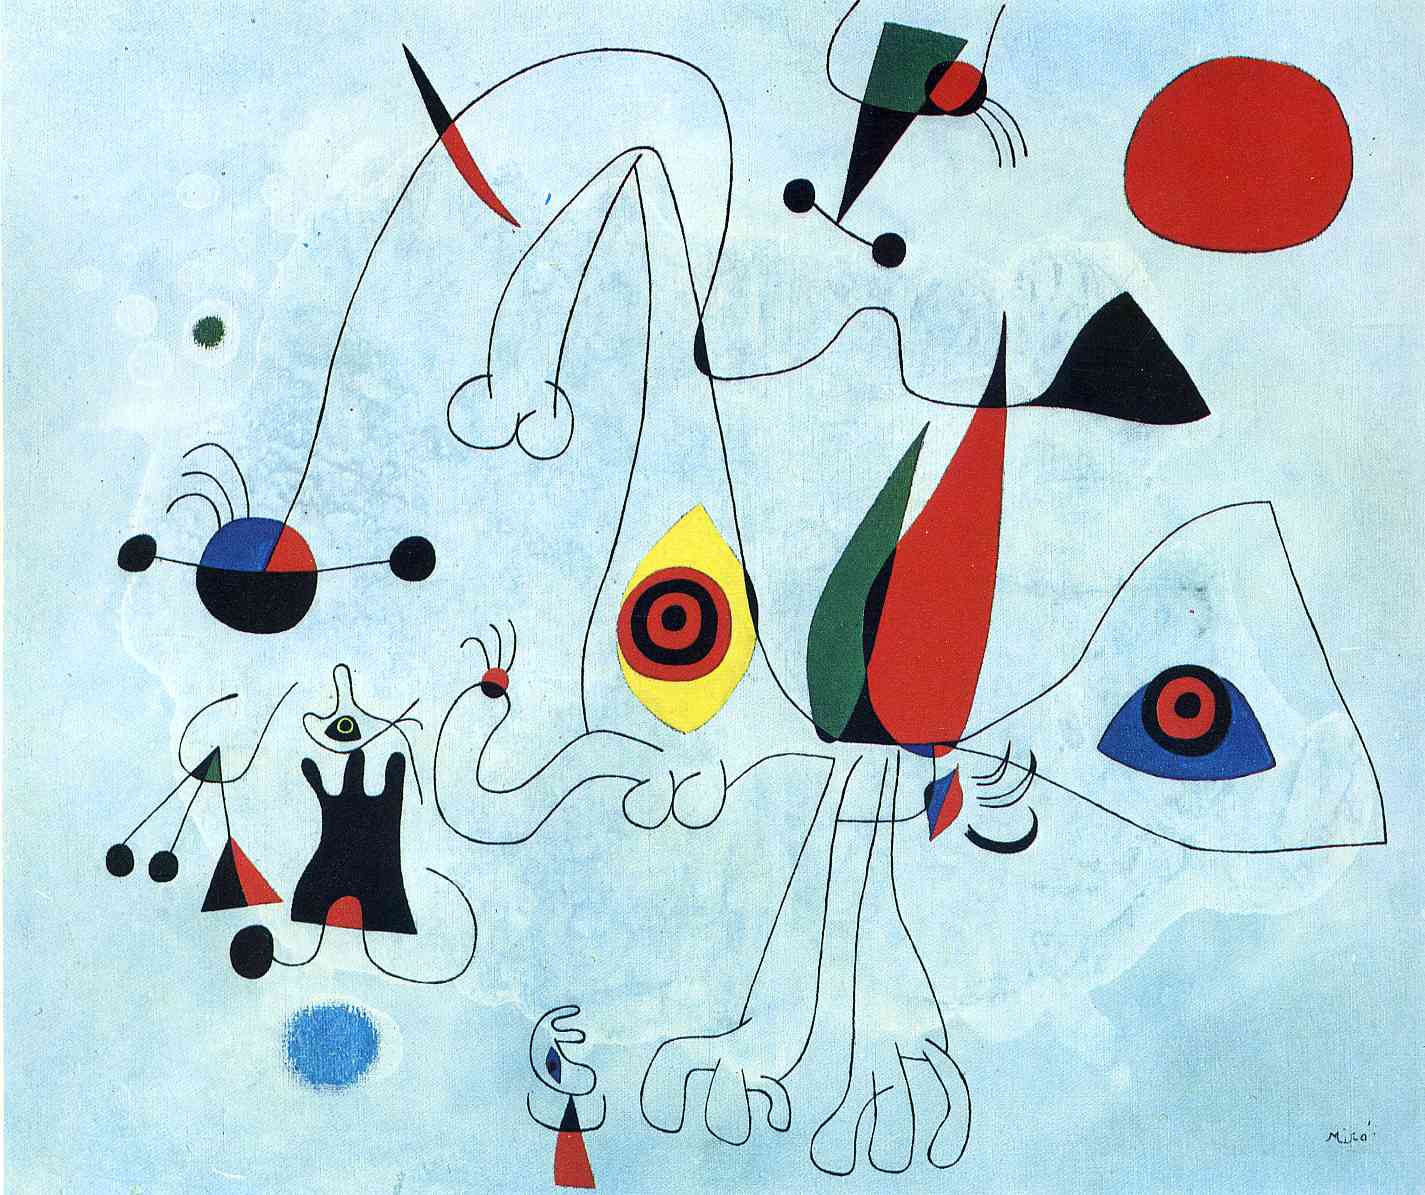 Joan Miro Lesson - Miro Skyscape